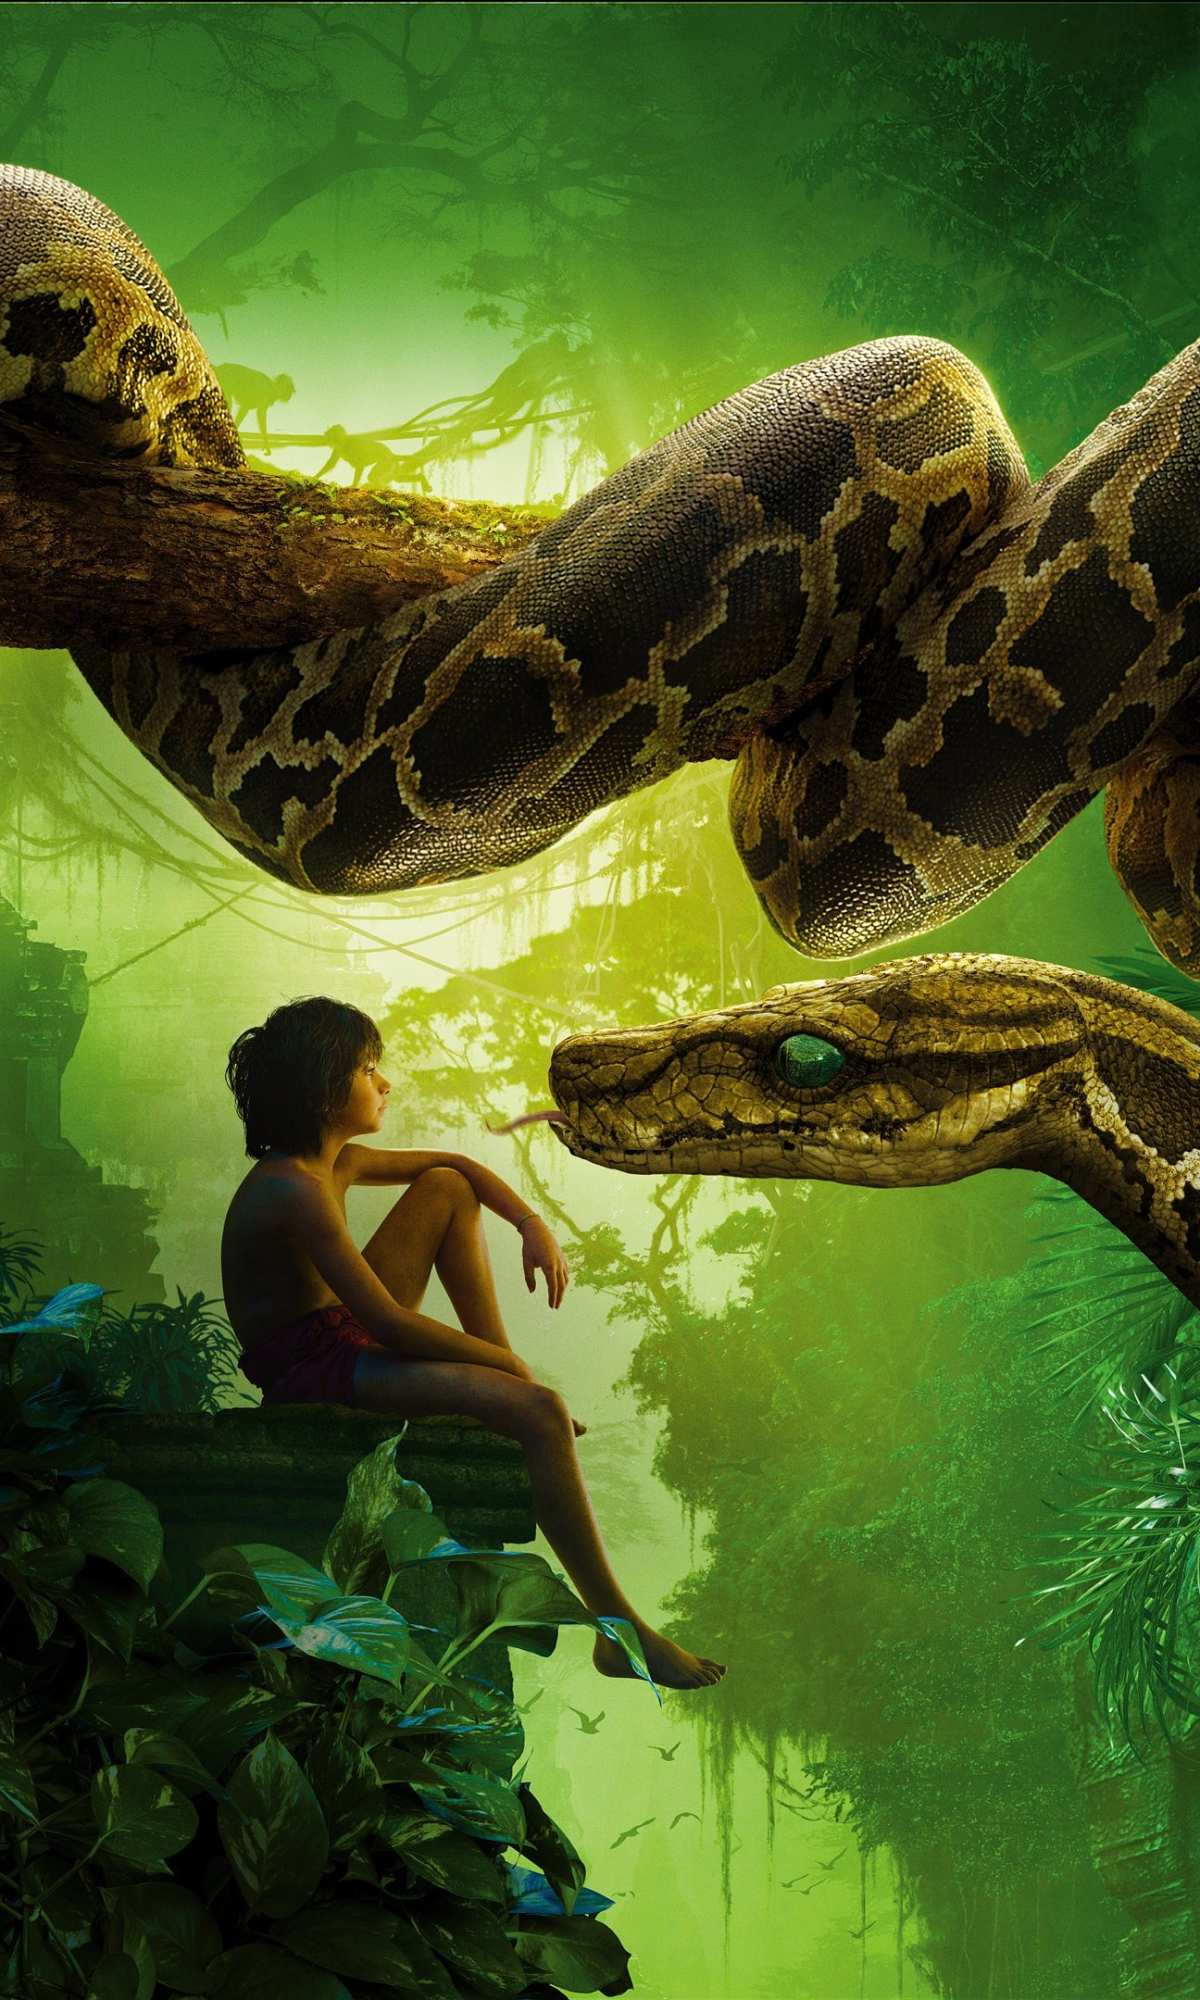 mowgli, movie, the jungle book (2016), snake, kaa (jungle book), the jungle book iphone wallpaper